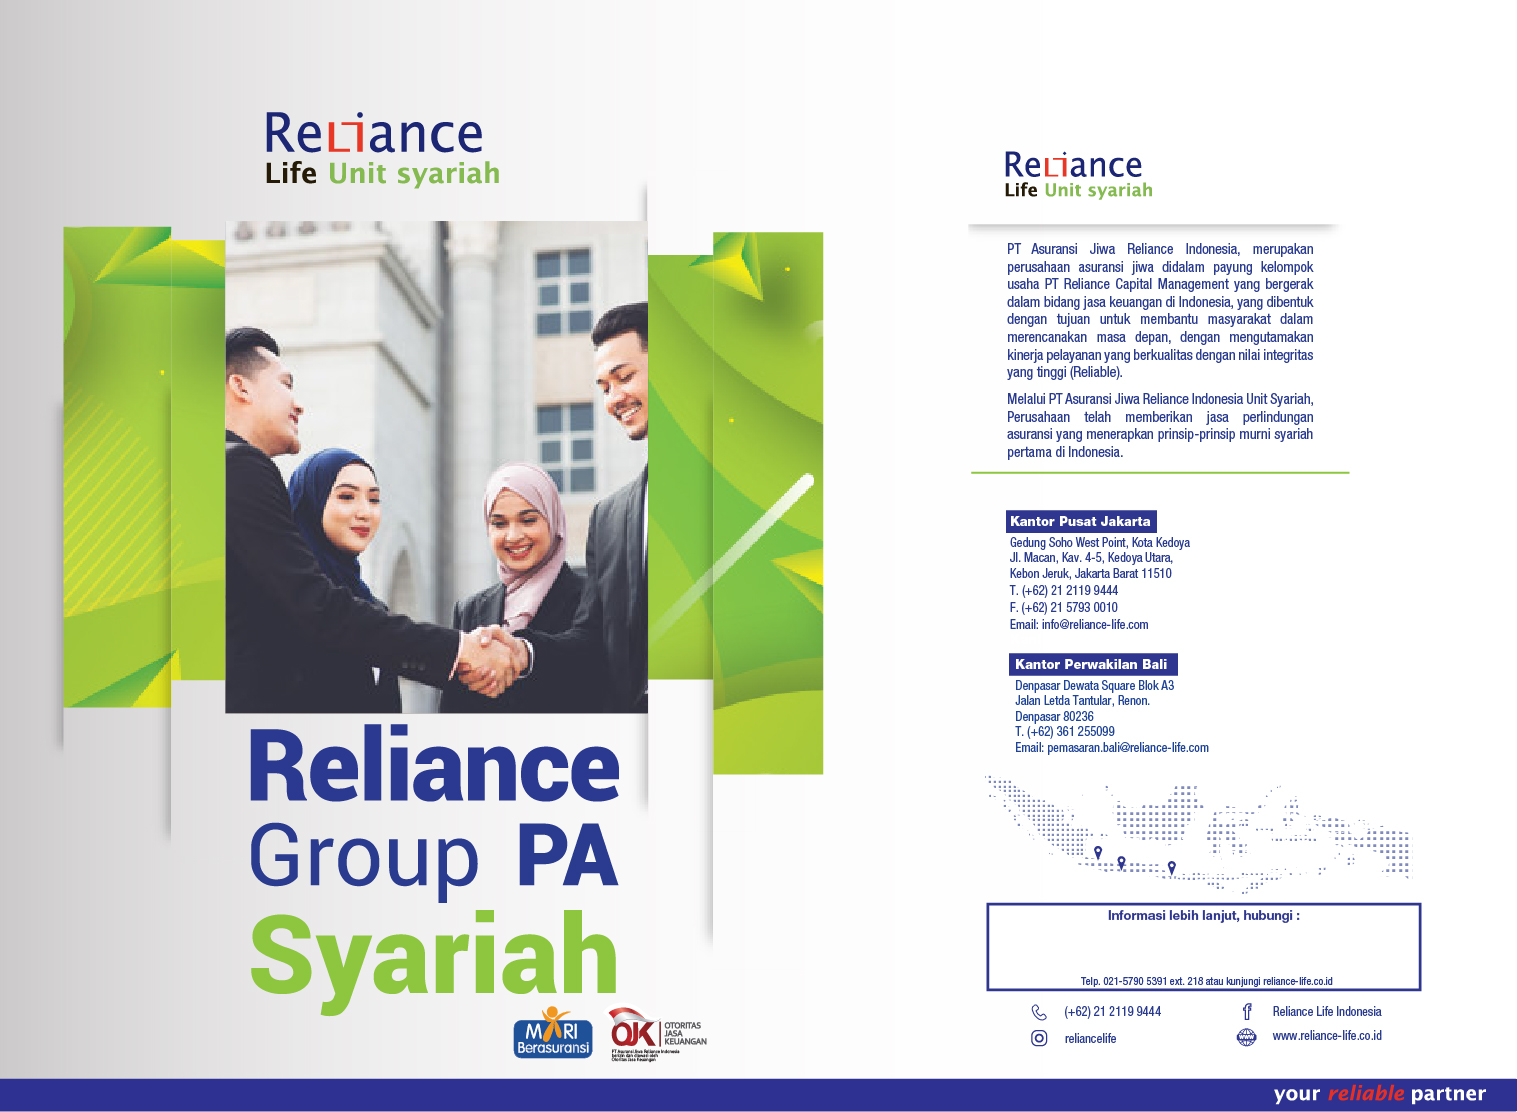 Reliance Group PA Syariah